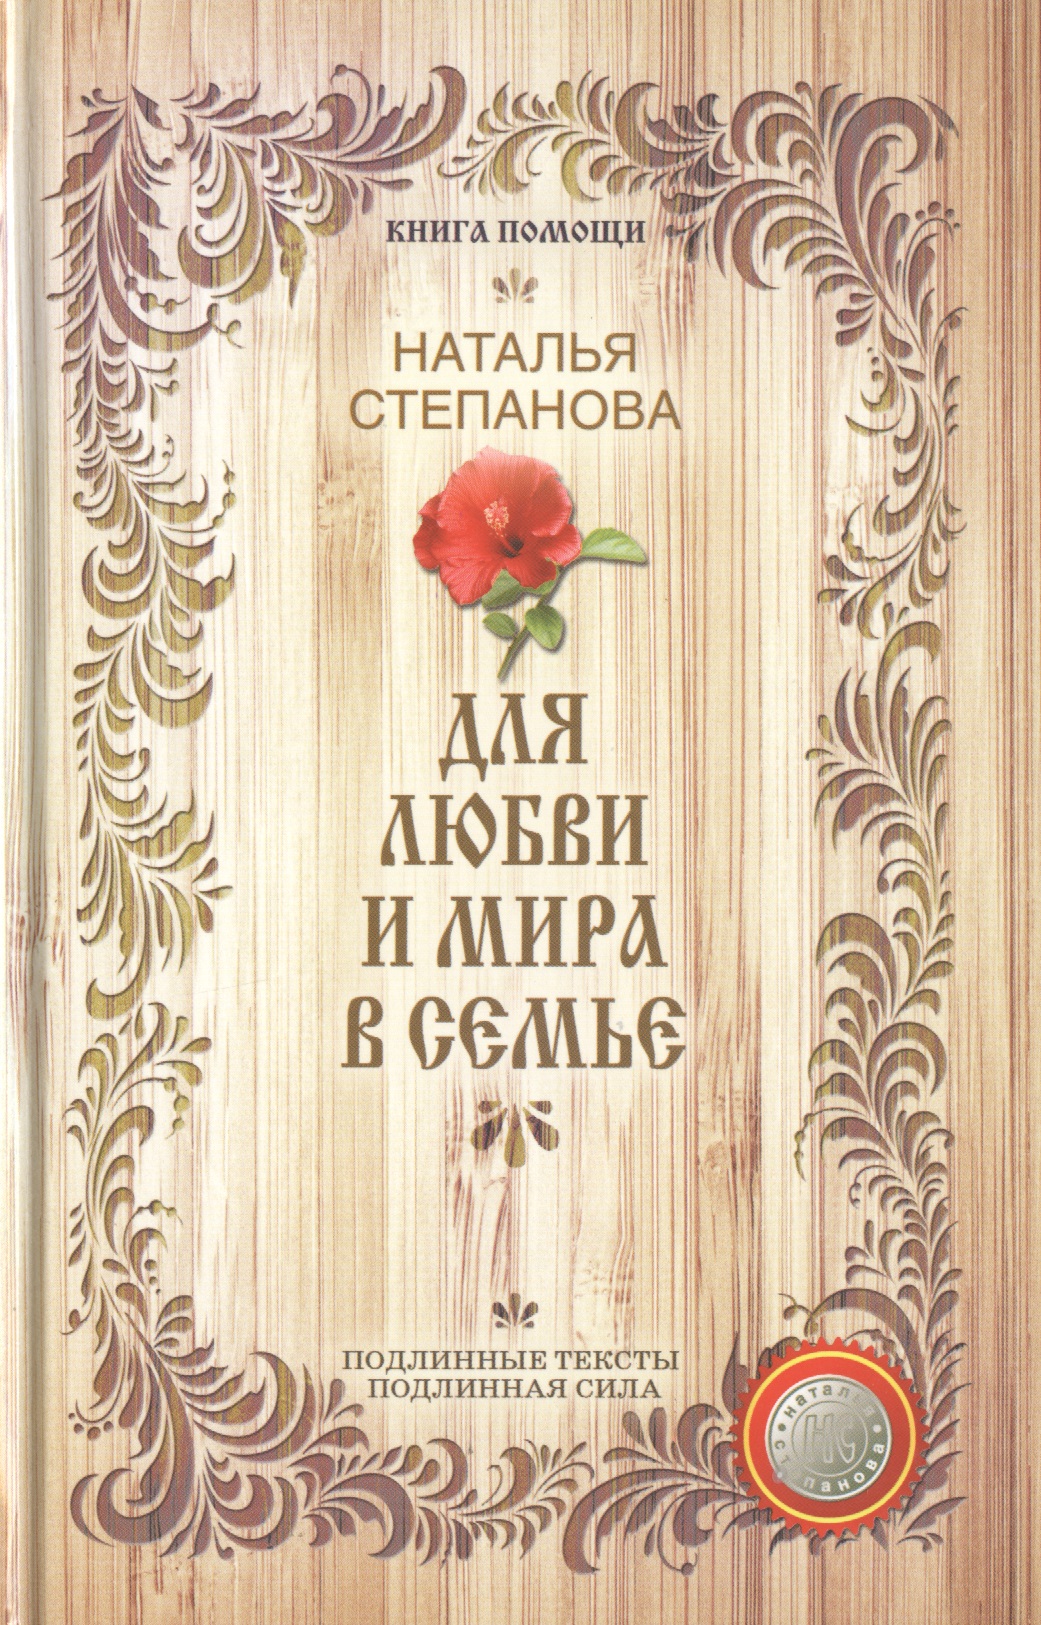 Для любви и мира в семье (Книга помощи) Степанова